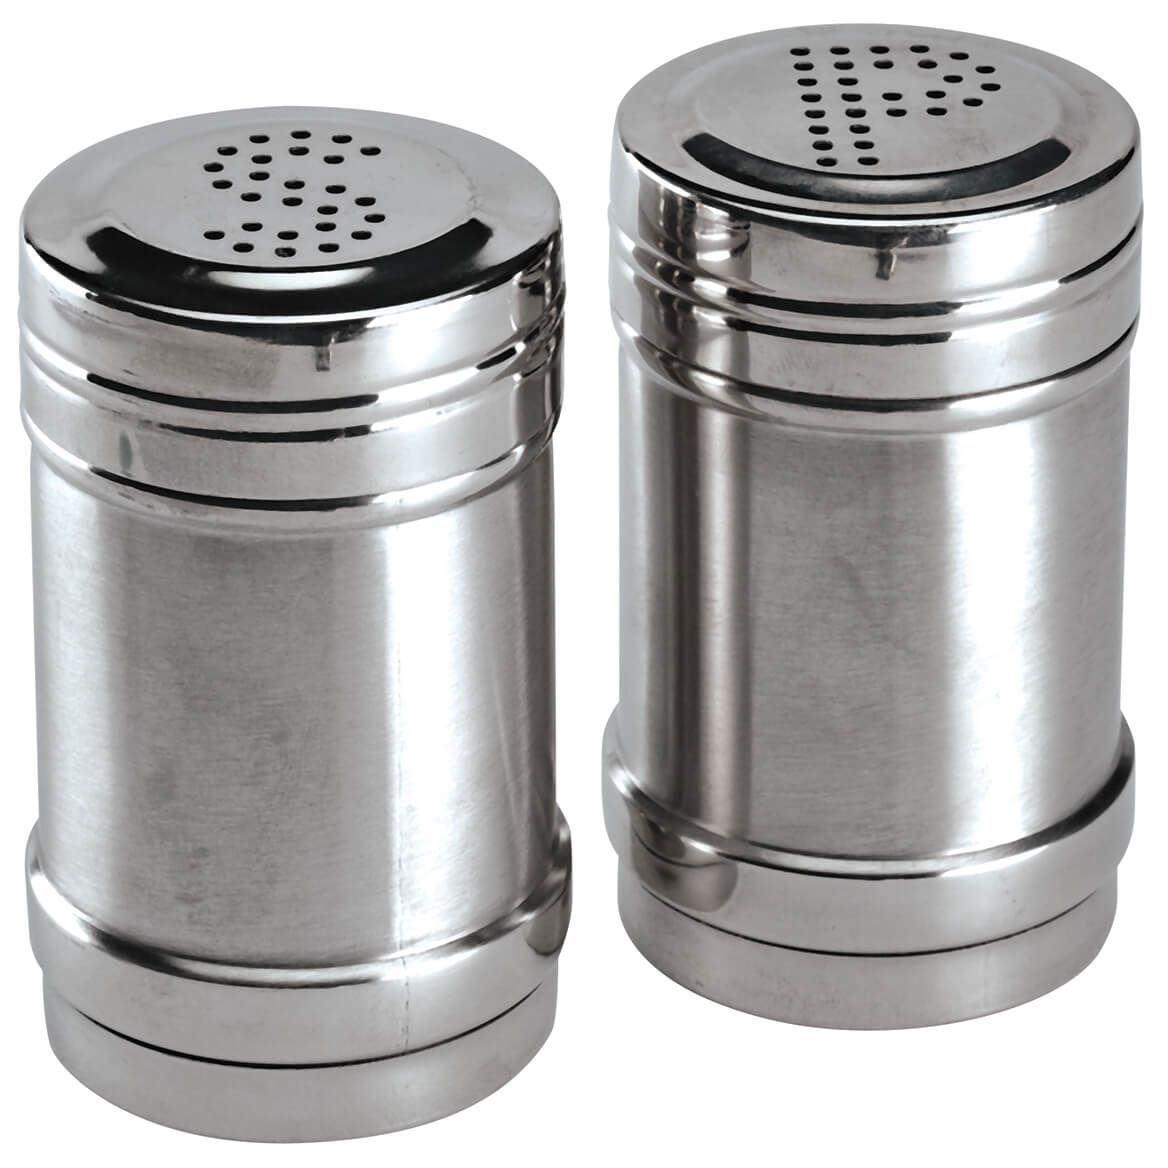 Stainless Steel Salt & Pepper Shakers + '-' + 372016